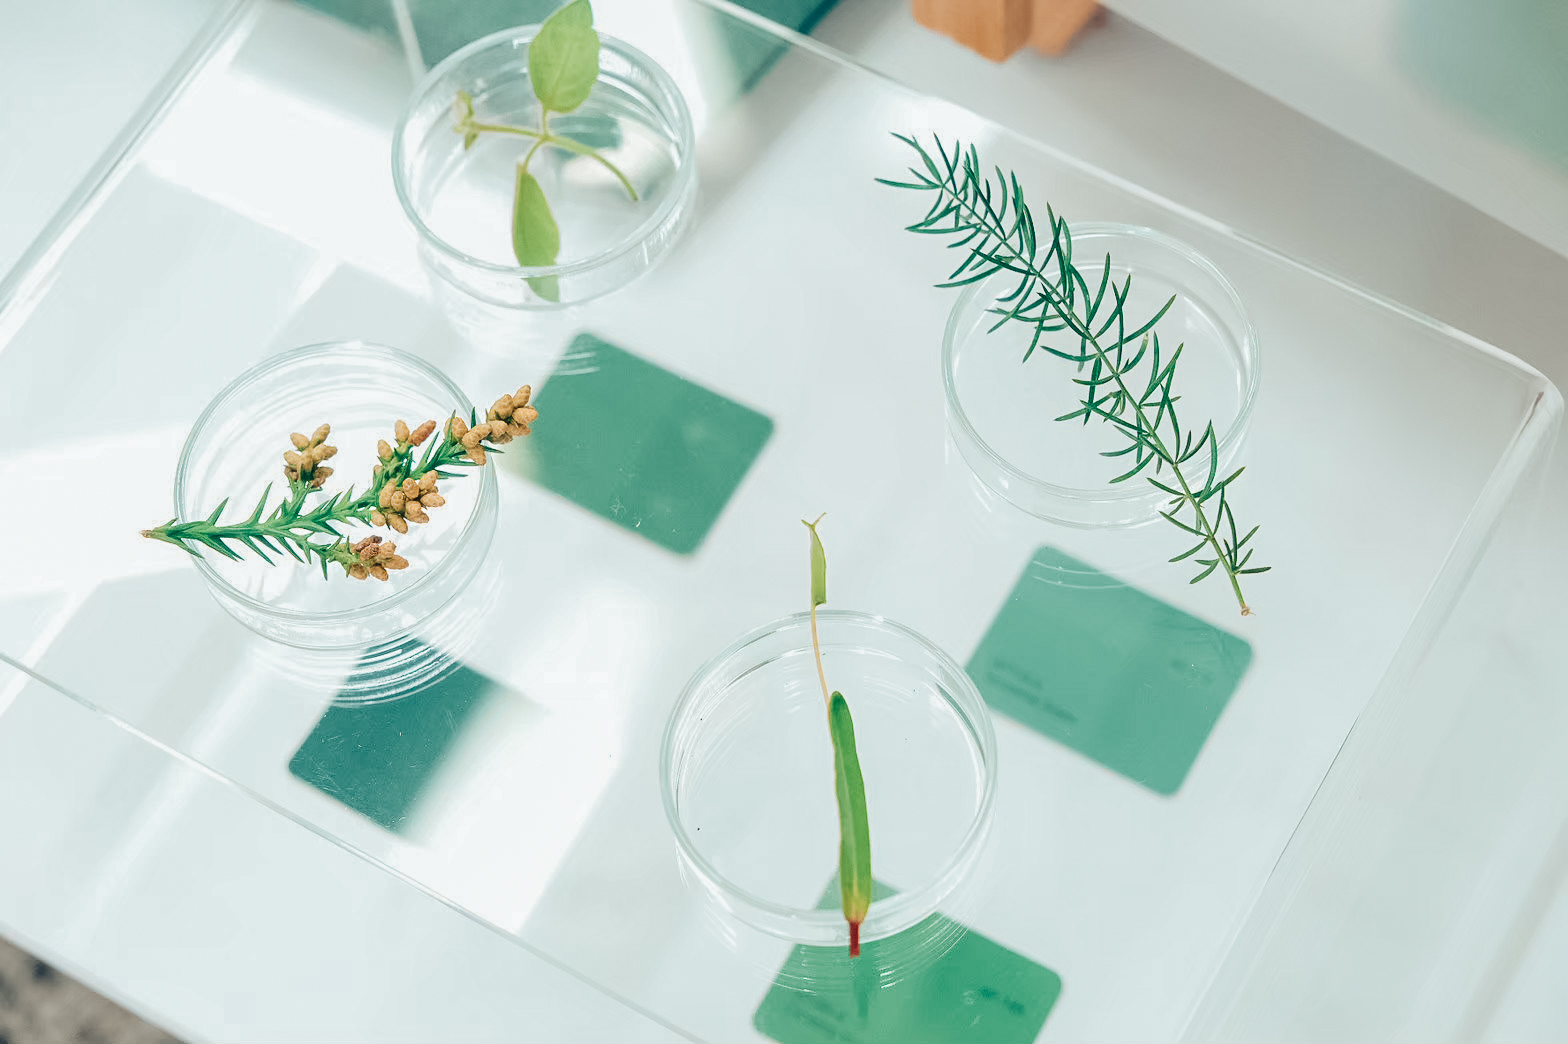 呂郁芬「微觀綠藝」課程中放在玻璃皿上的植物樣本